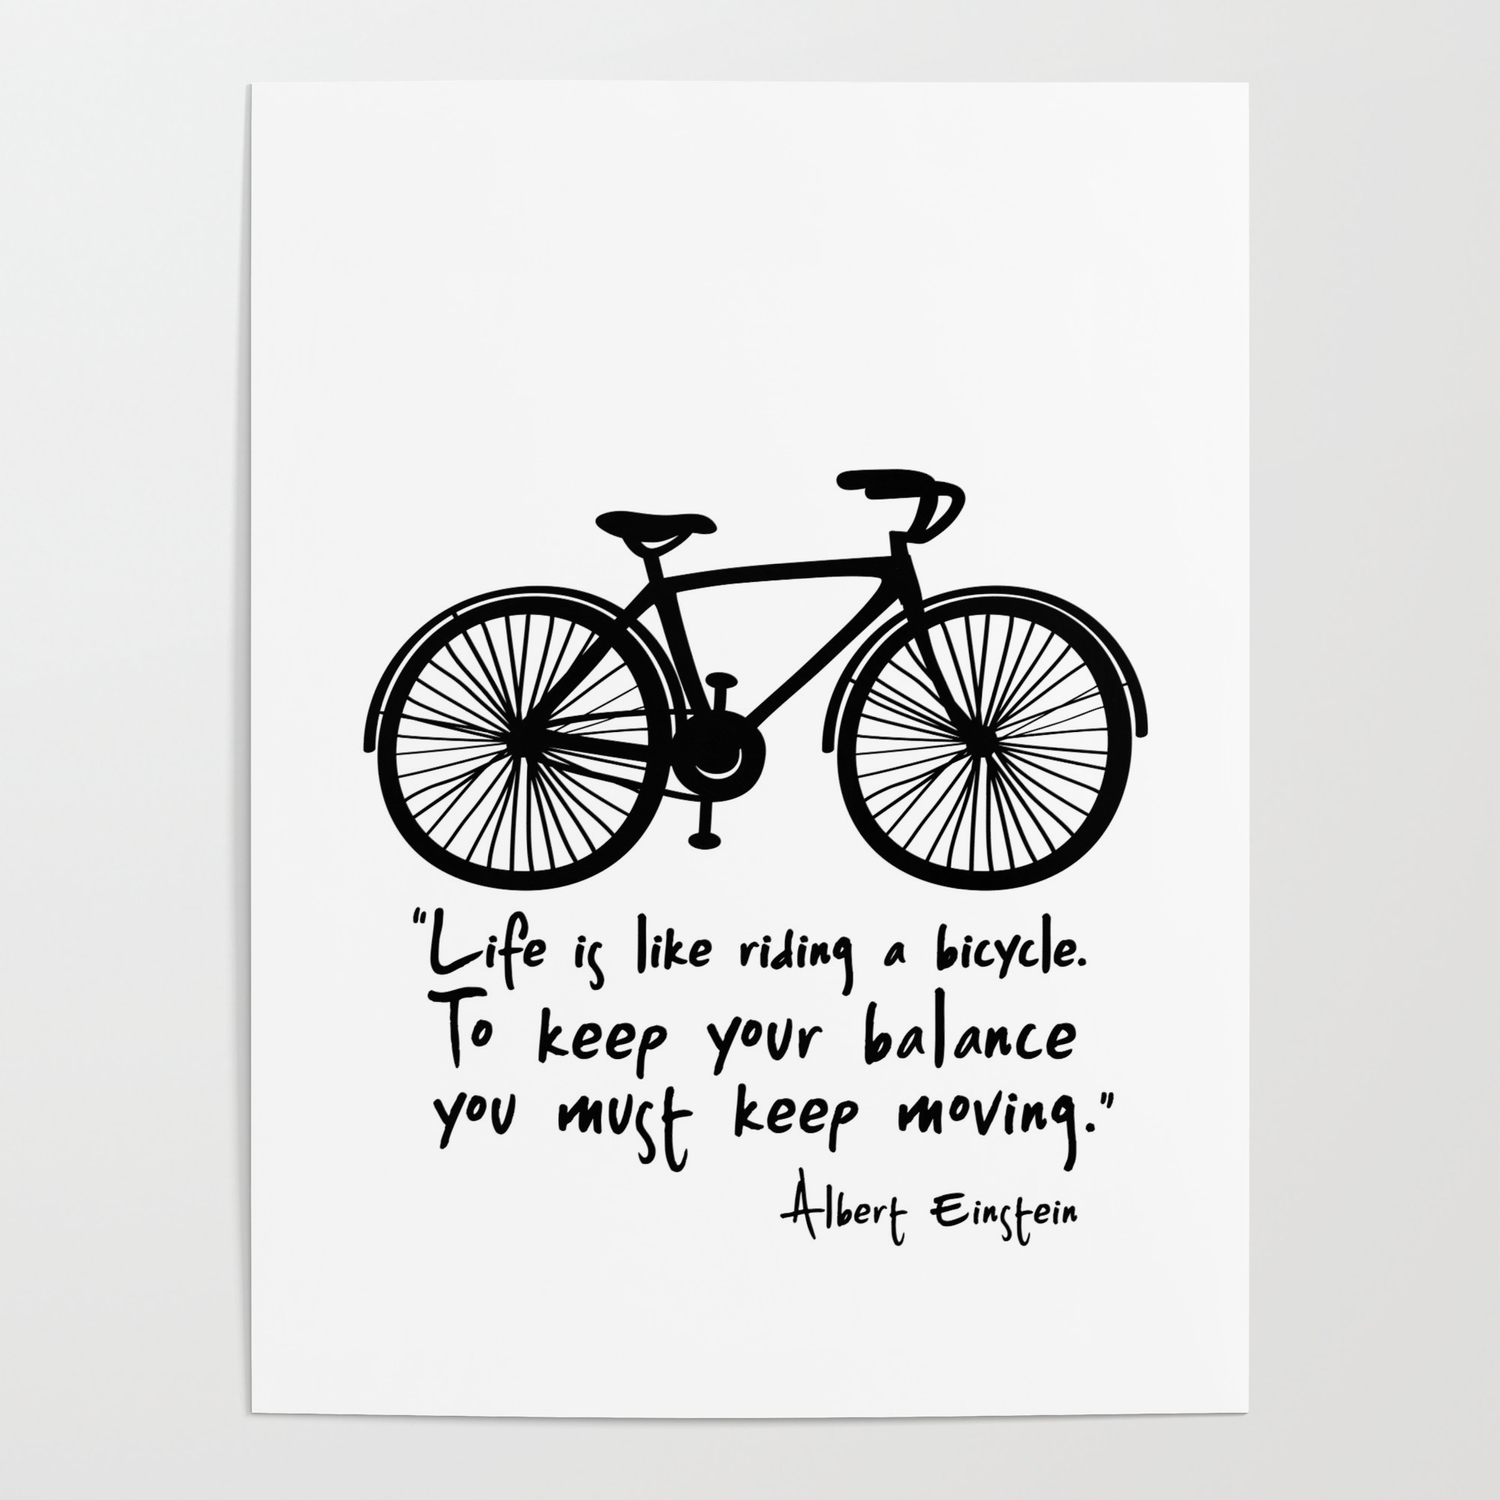 Life is ride. Красивые фразы про велосипед. Высказывания про велосипед. Цитаты про велосипед. Поговорки про велосипед.